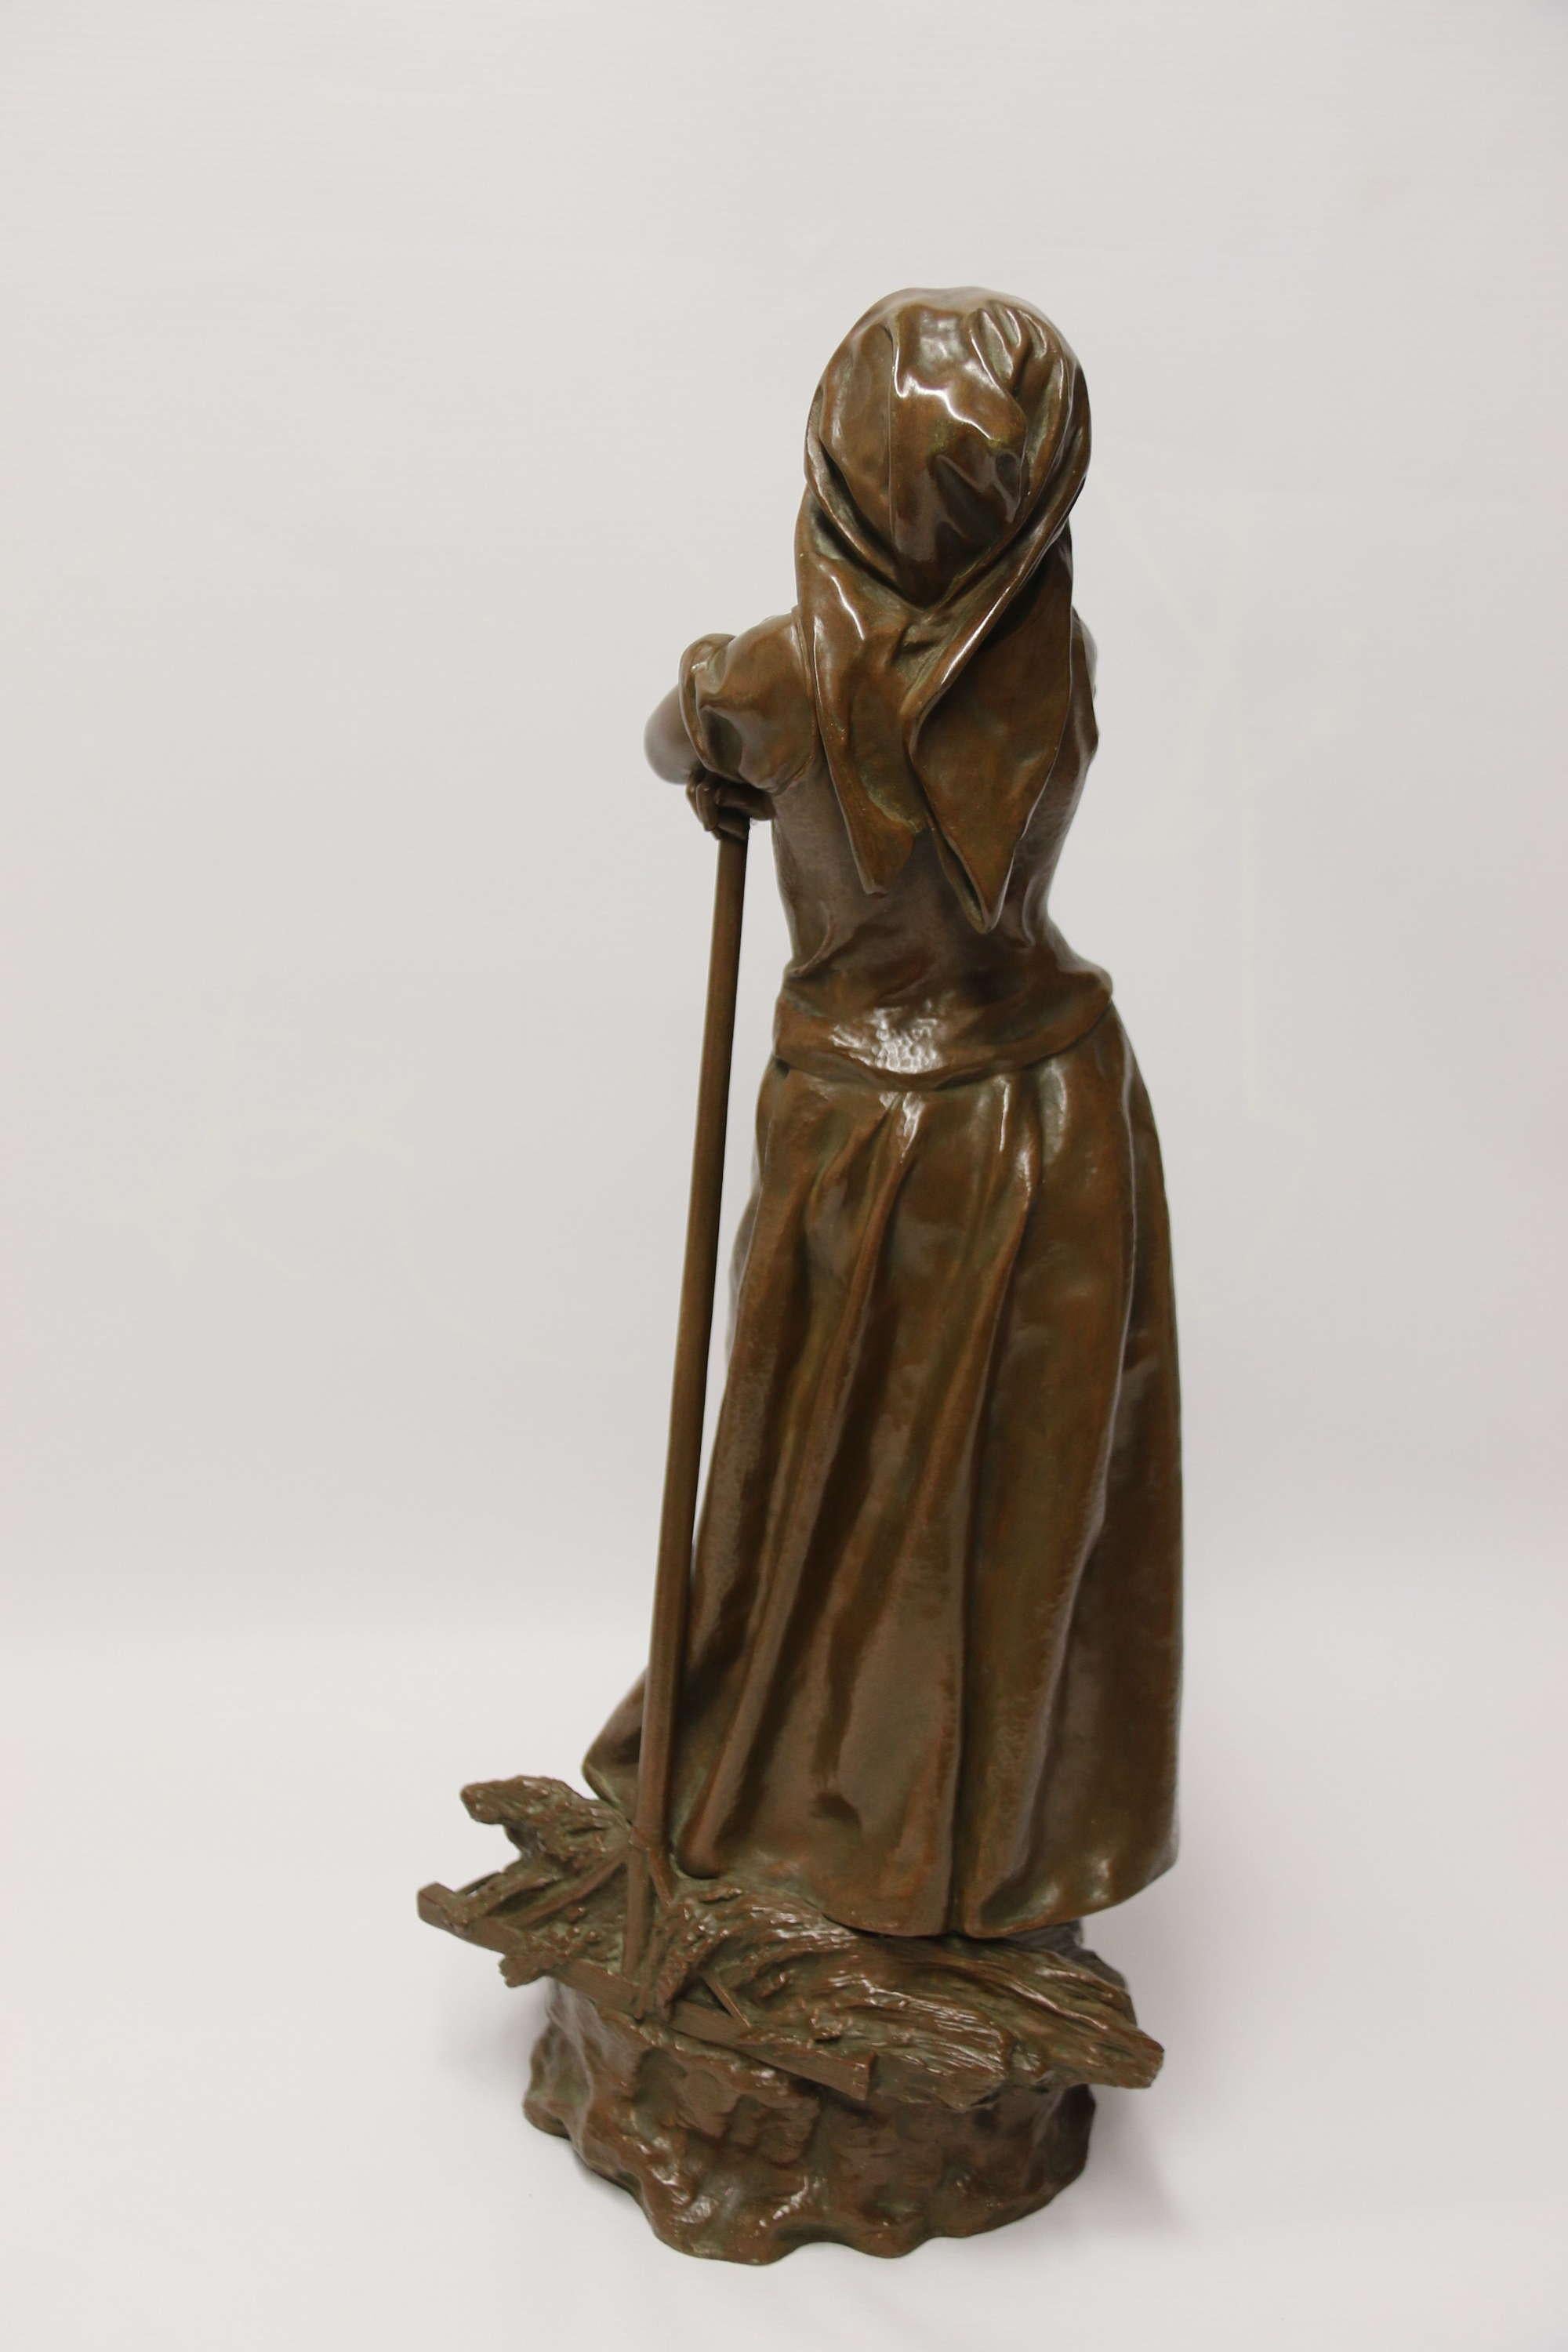 Sculpture en bronze du 19e siècle représentant une jeune femme se réunissant

Cette superbe figure en bronze du XIXe siècle a été produite par la très réputée fonderie française Bronze Garanti Au Titre I.L.A. Depossee, dont elle porte le cachet et